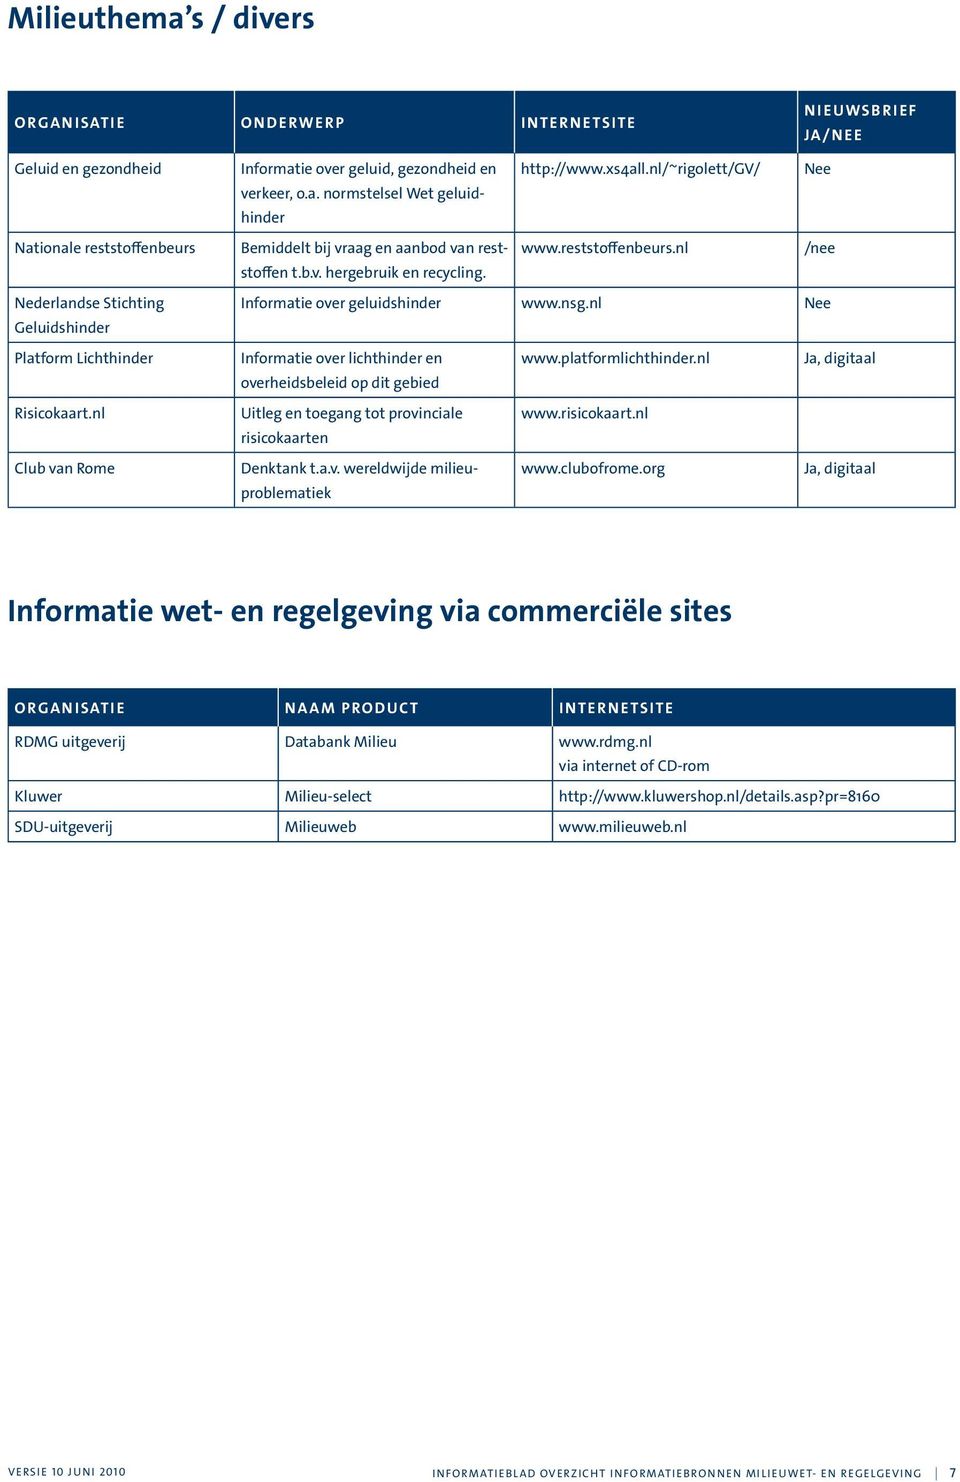 reststoffenbeurs.nl /nee t.b.v. hergebruik en recycling. Informatie over geluidshinder www.nsg.nl Nee Informatie over lichthinder en www.platformlichthinder.